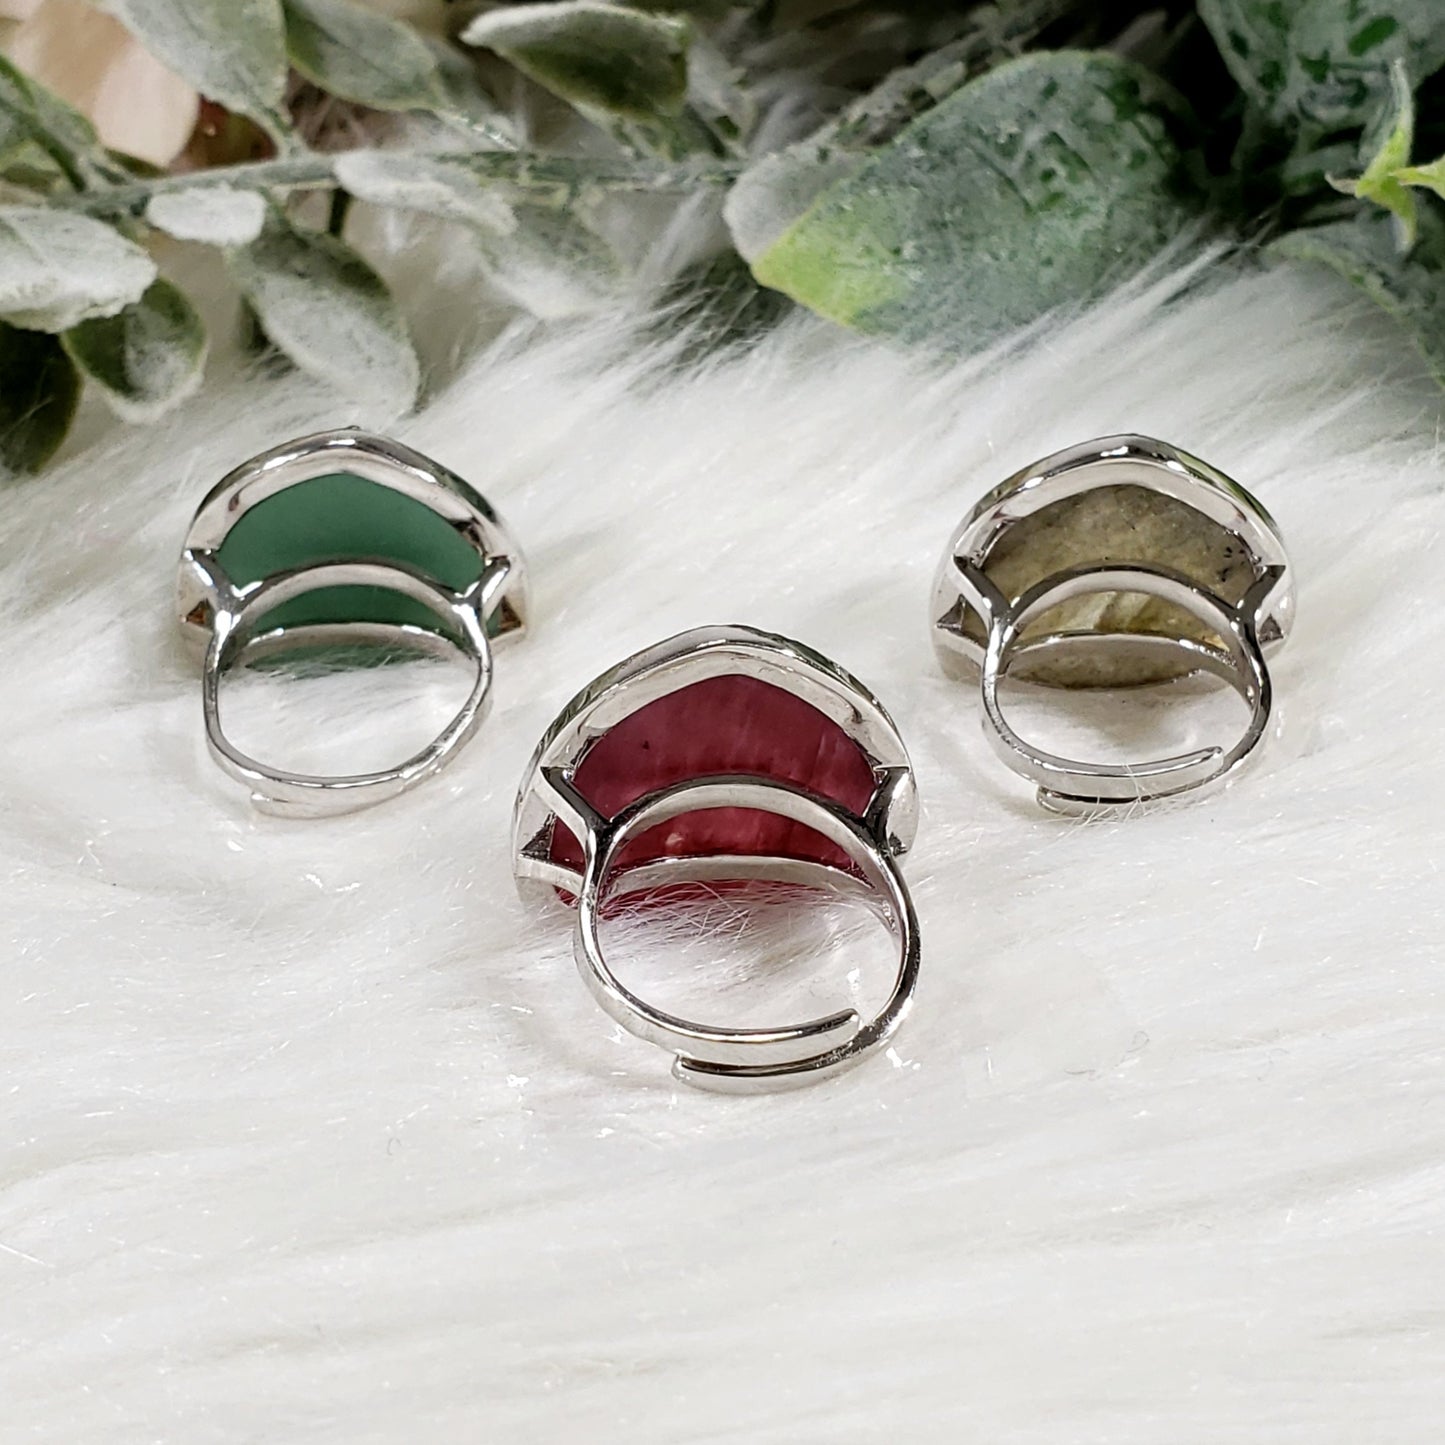 Beautiful Crystal Pave Rings, adjustable Sterling Silver - Crystal Happenings